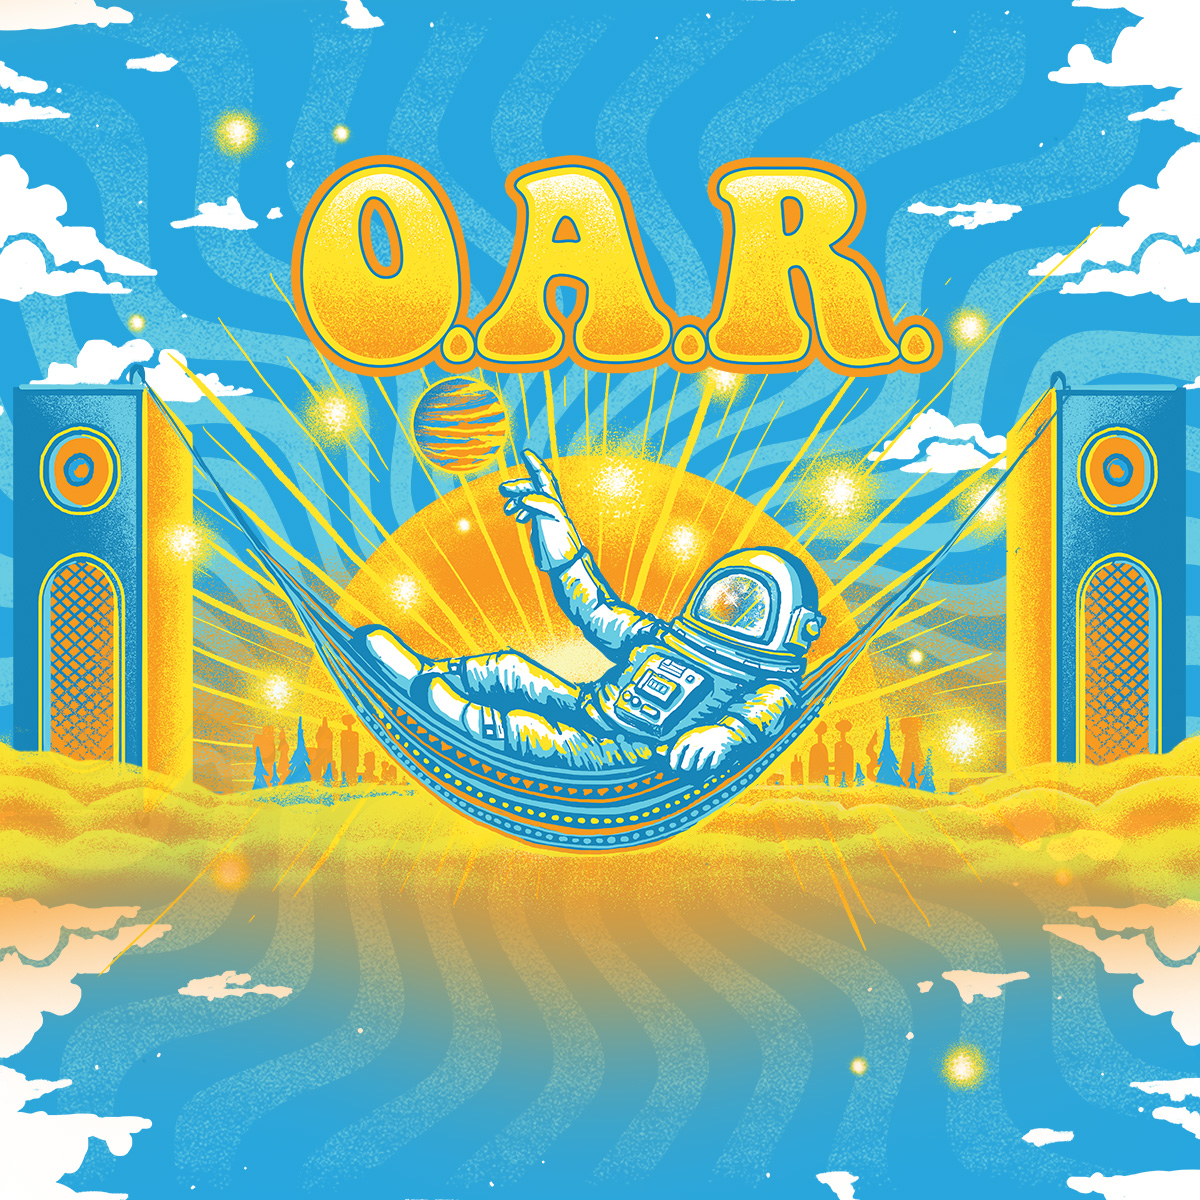 O.A.R. Official Site